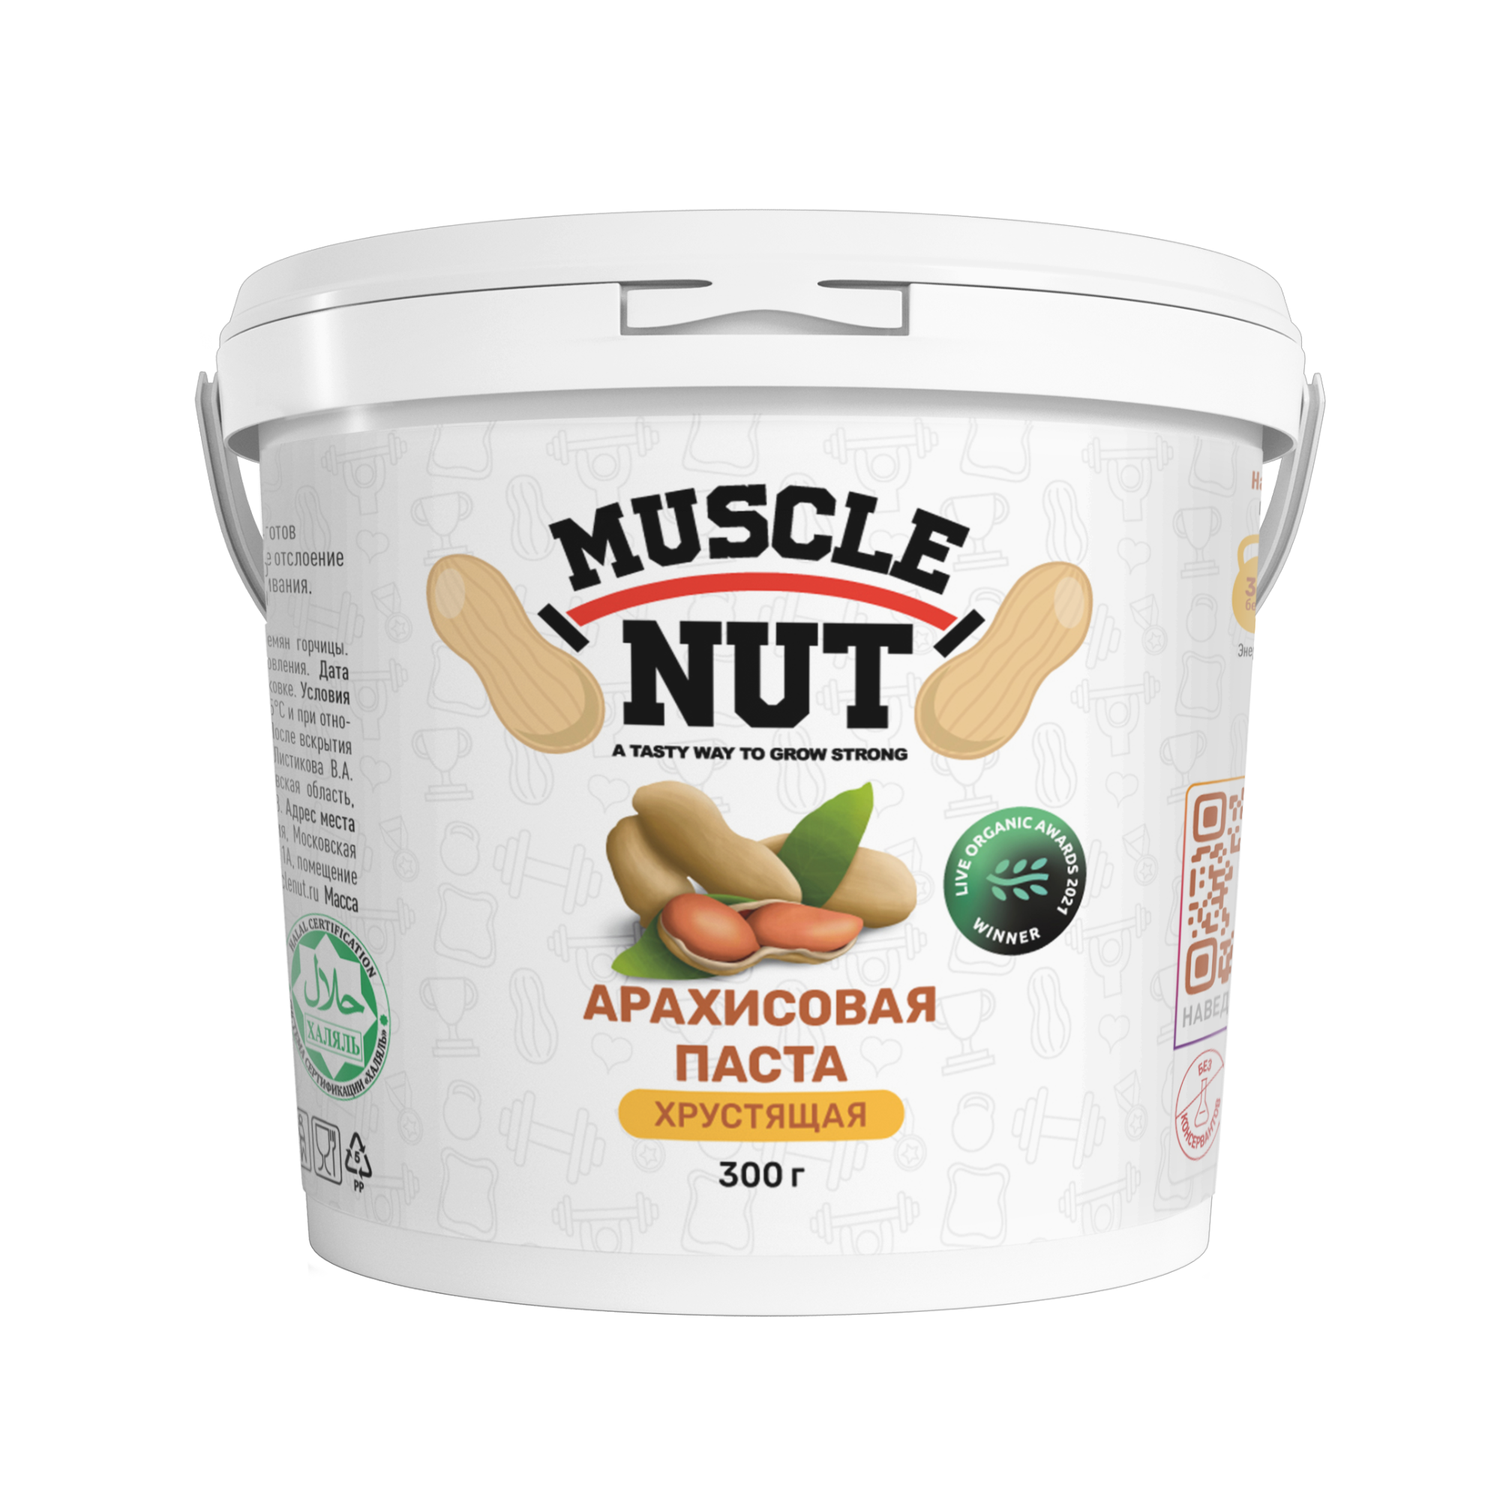 Арахисовая паста Muscle Nut хрустящая без сахара натуральная высокобелковая 300 г - фото 1